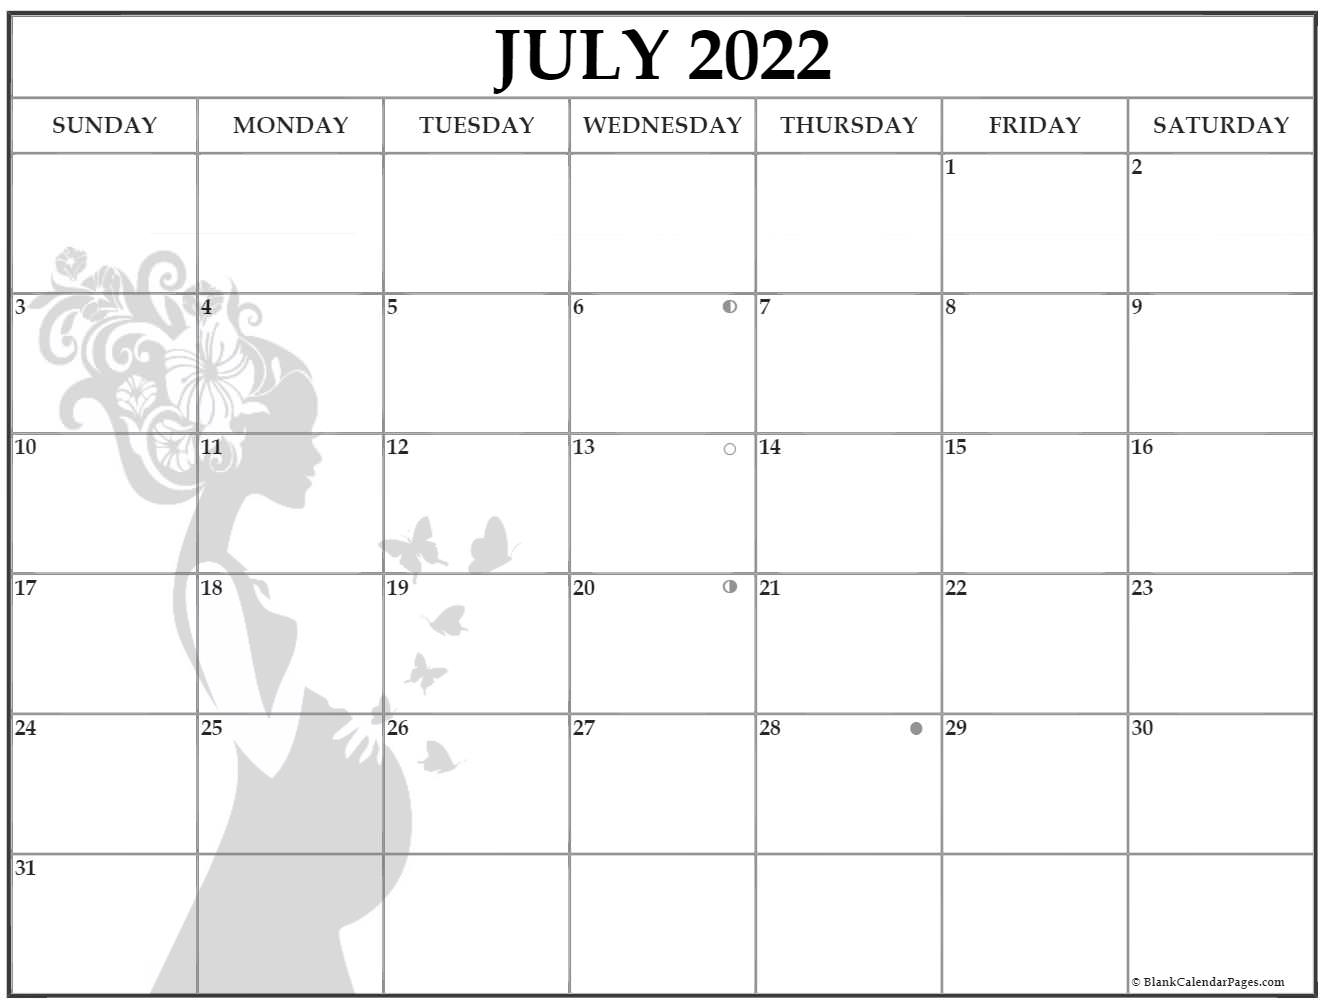 July 2022 Pregnancy Calendar | Fertility Calendar within Lunar Calendar 2022 Pdf